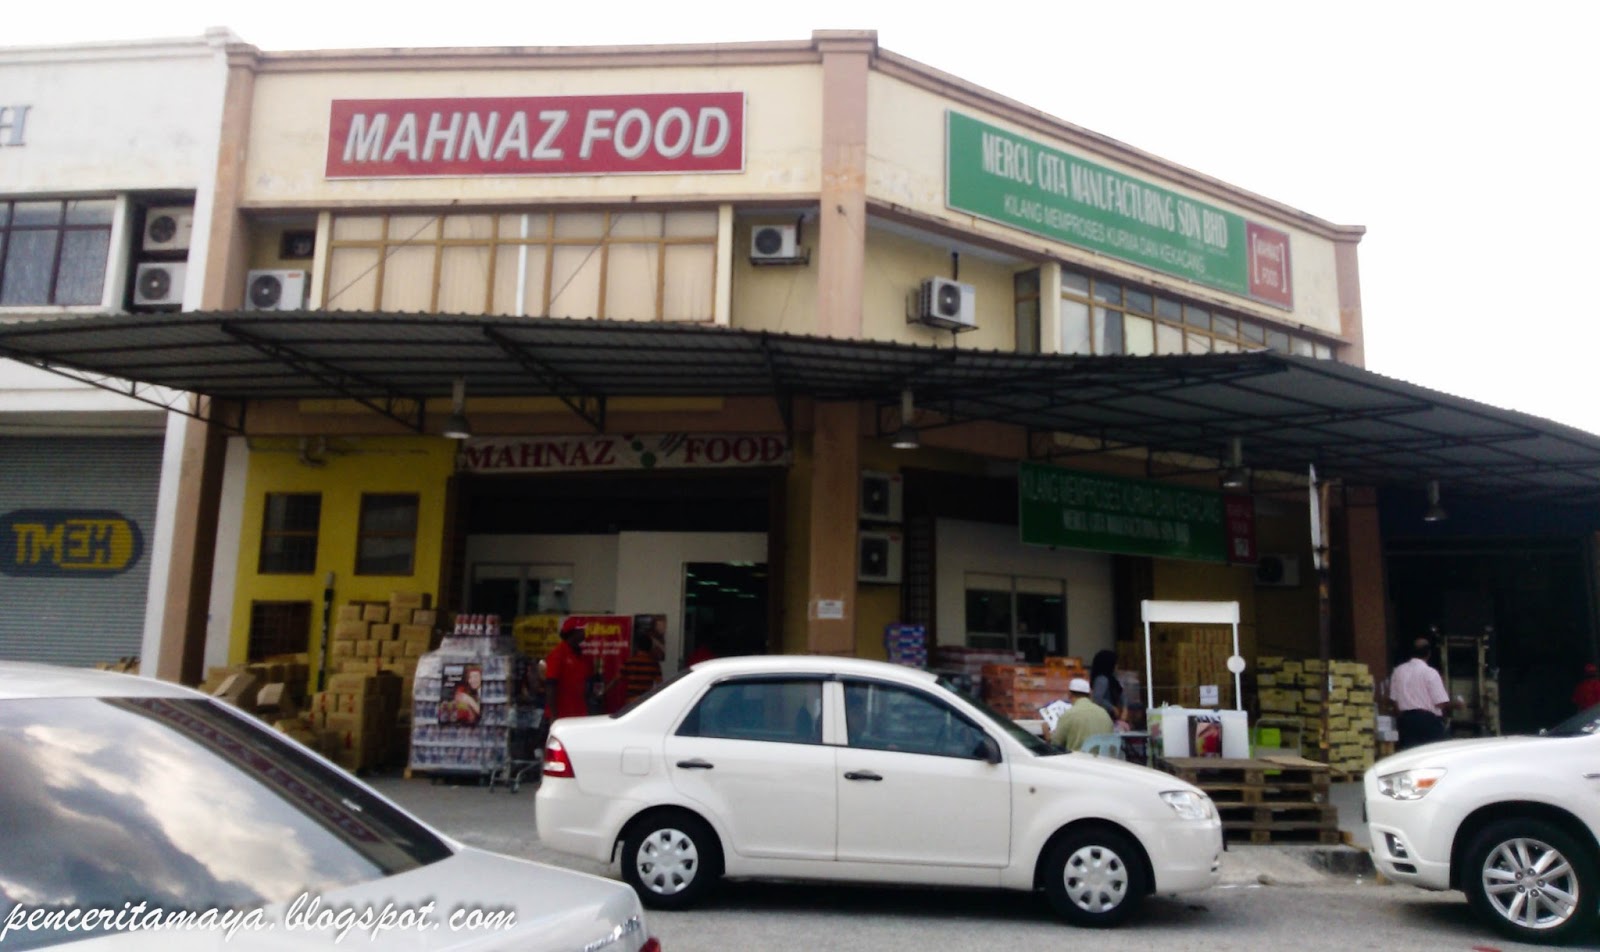 Ini cerita saya Mahnaz Food, Shah Alam